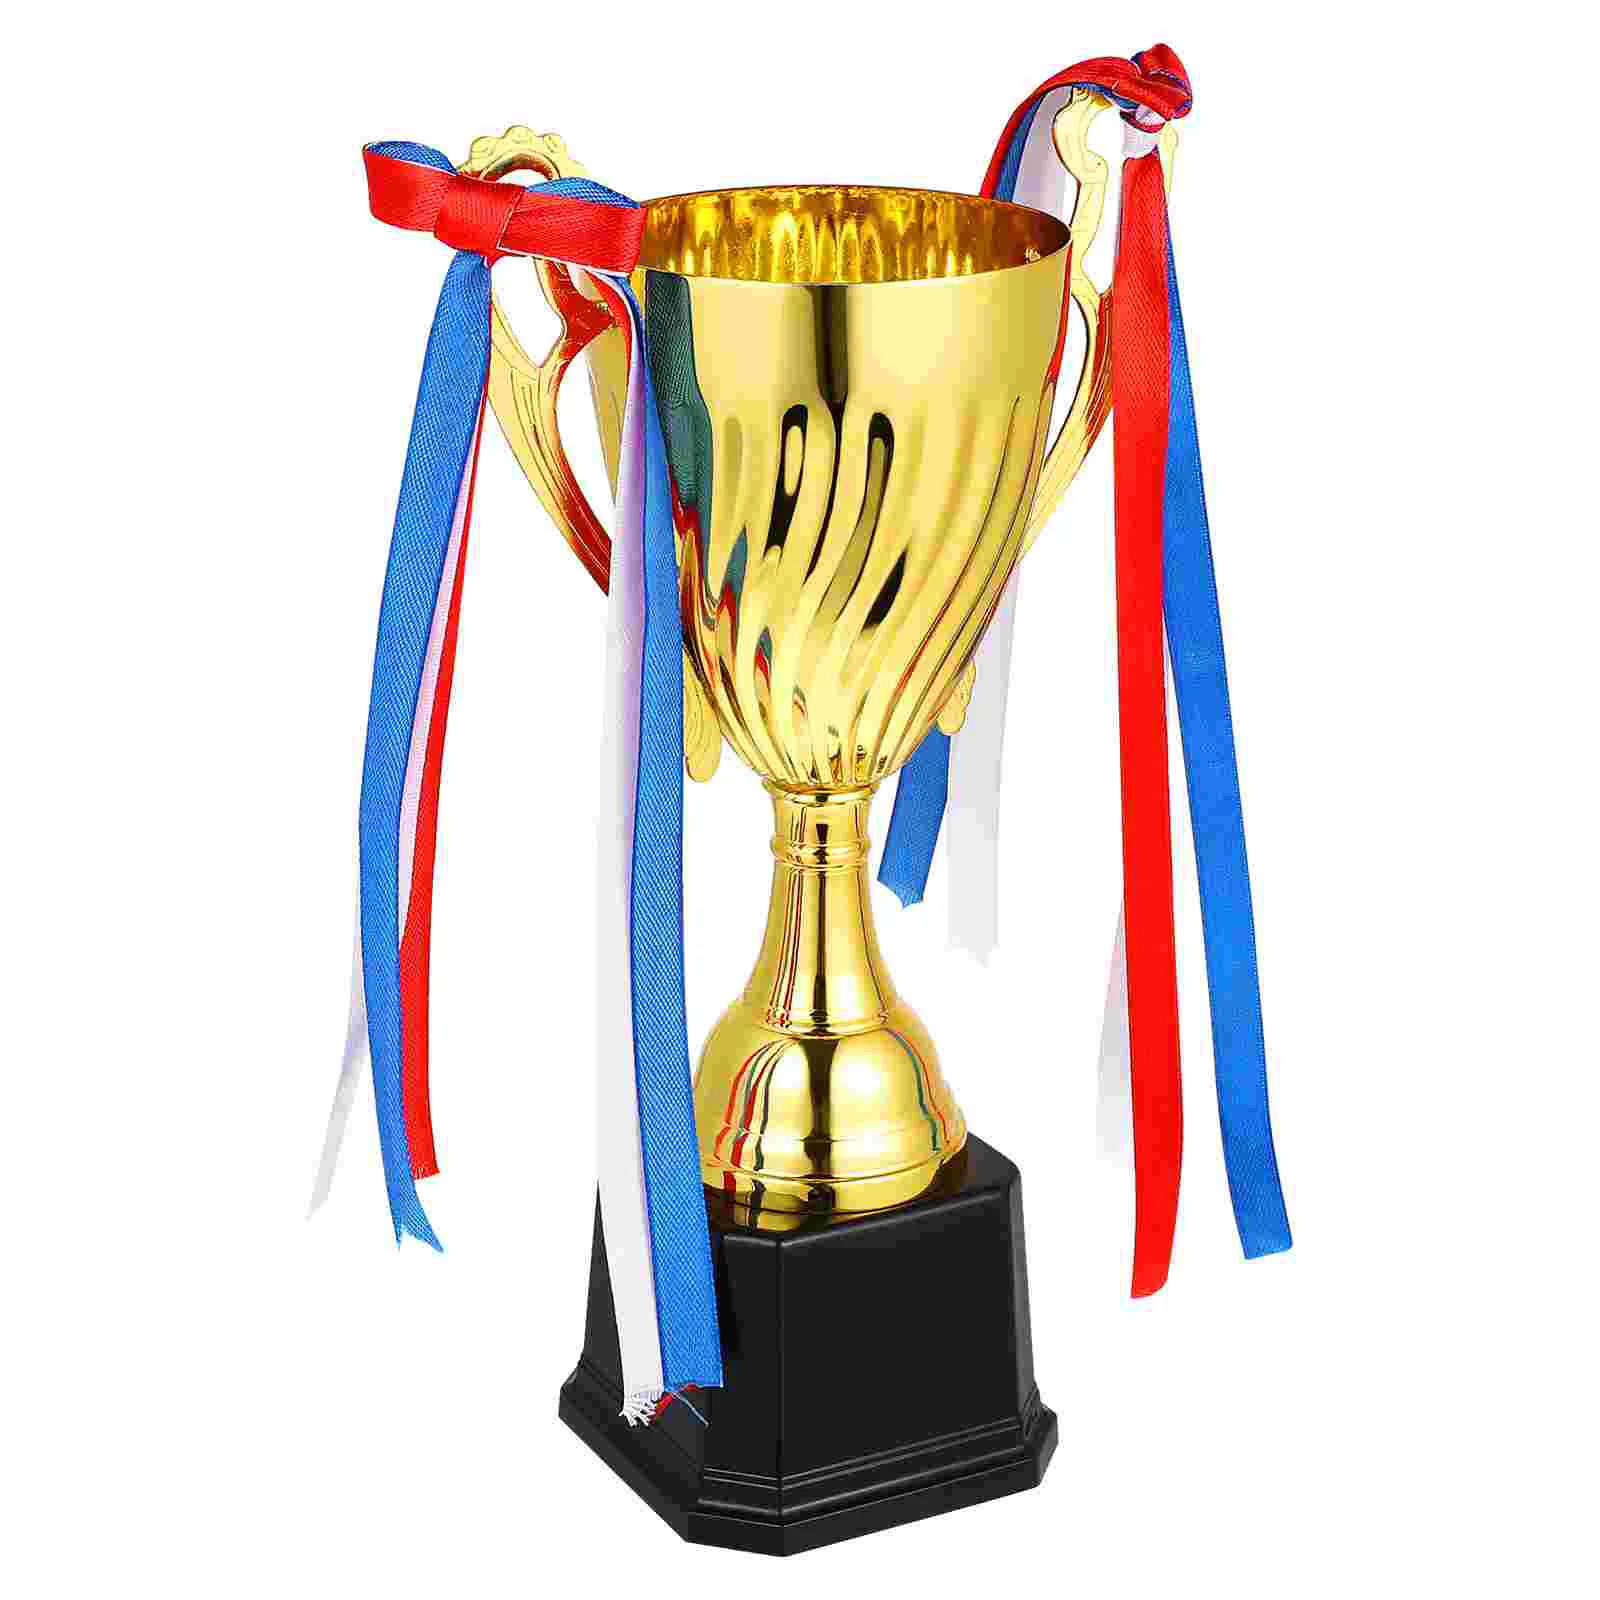 

Большая большая награда-трофей для спортивных соревнований, металлическая награда на первое место для турниров, соревнований